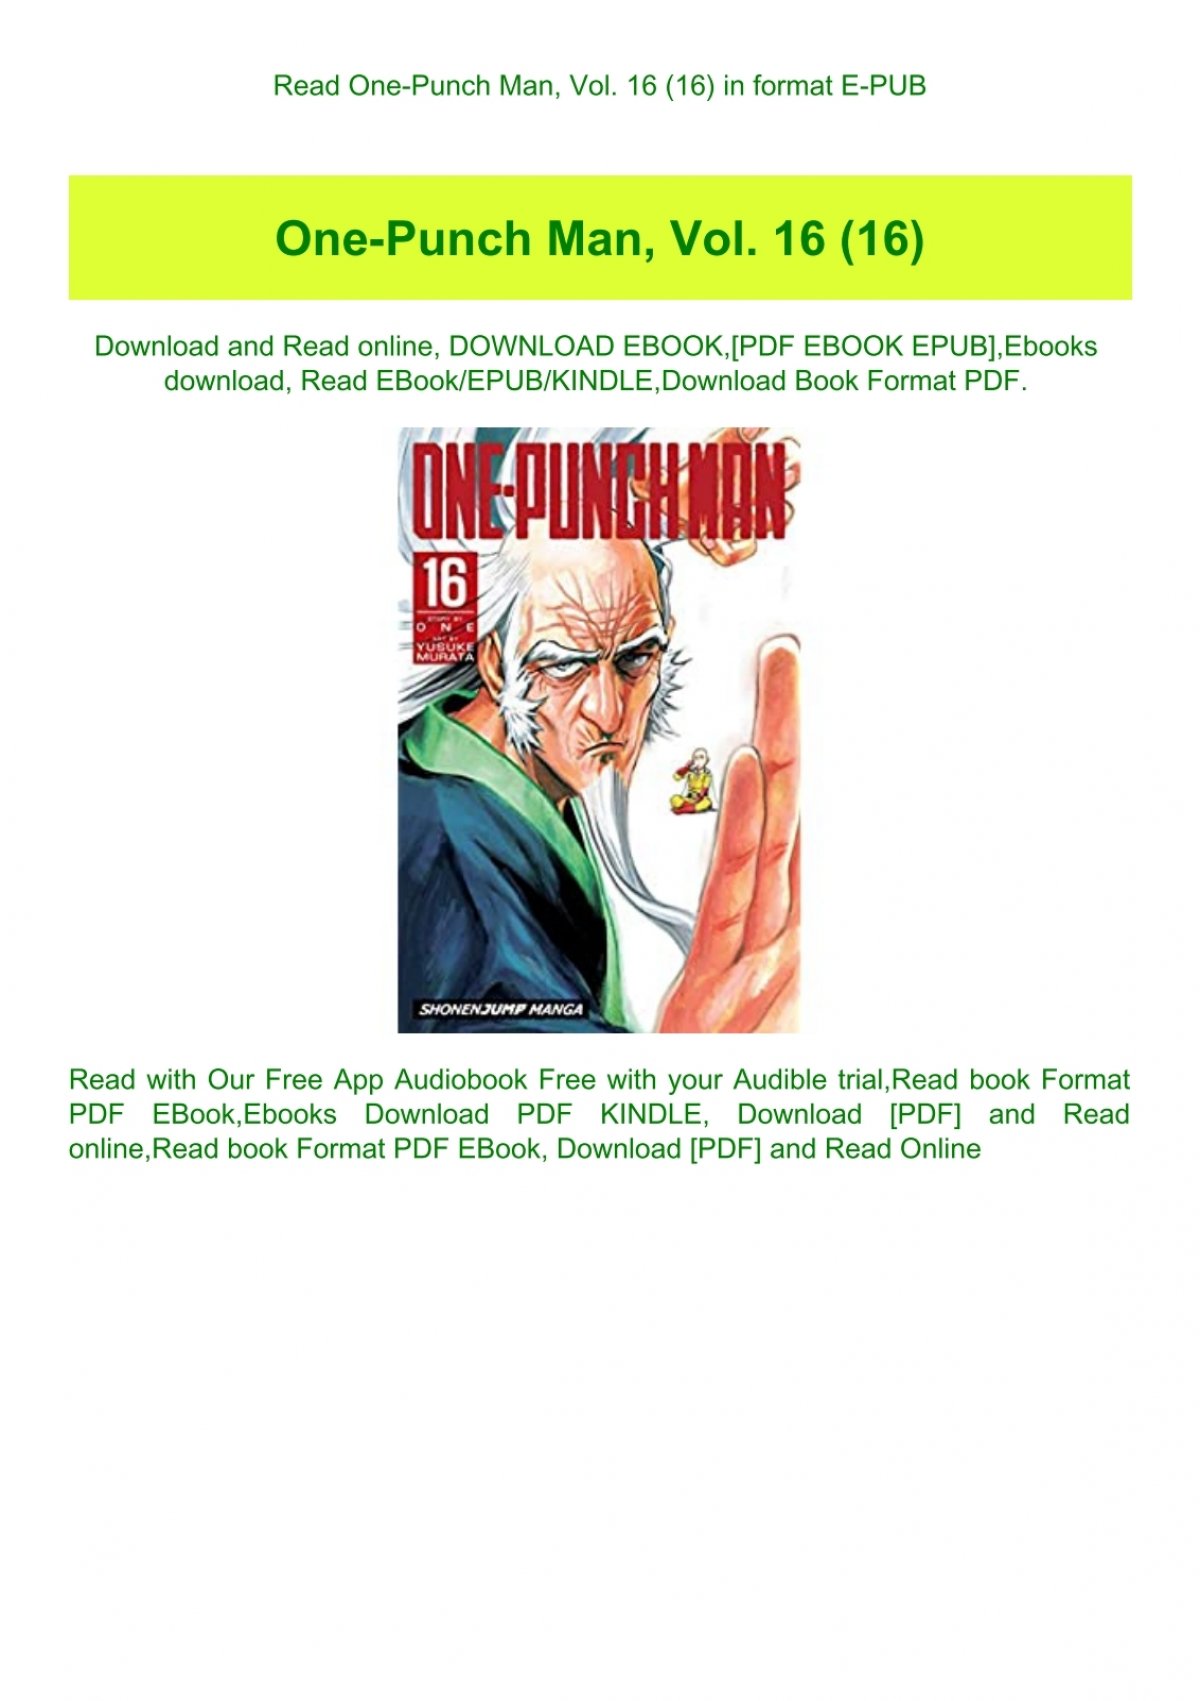 Mangá de One Punch Man completo em pdf para baixar 